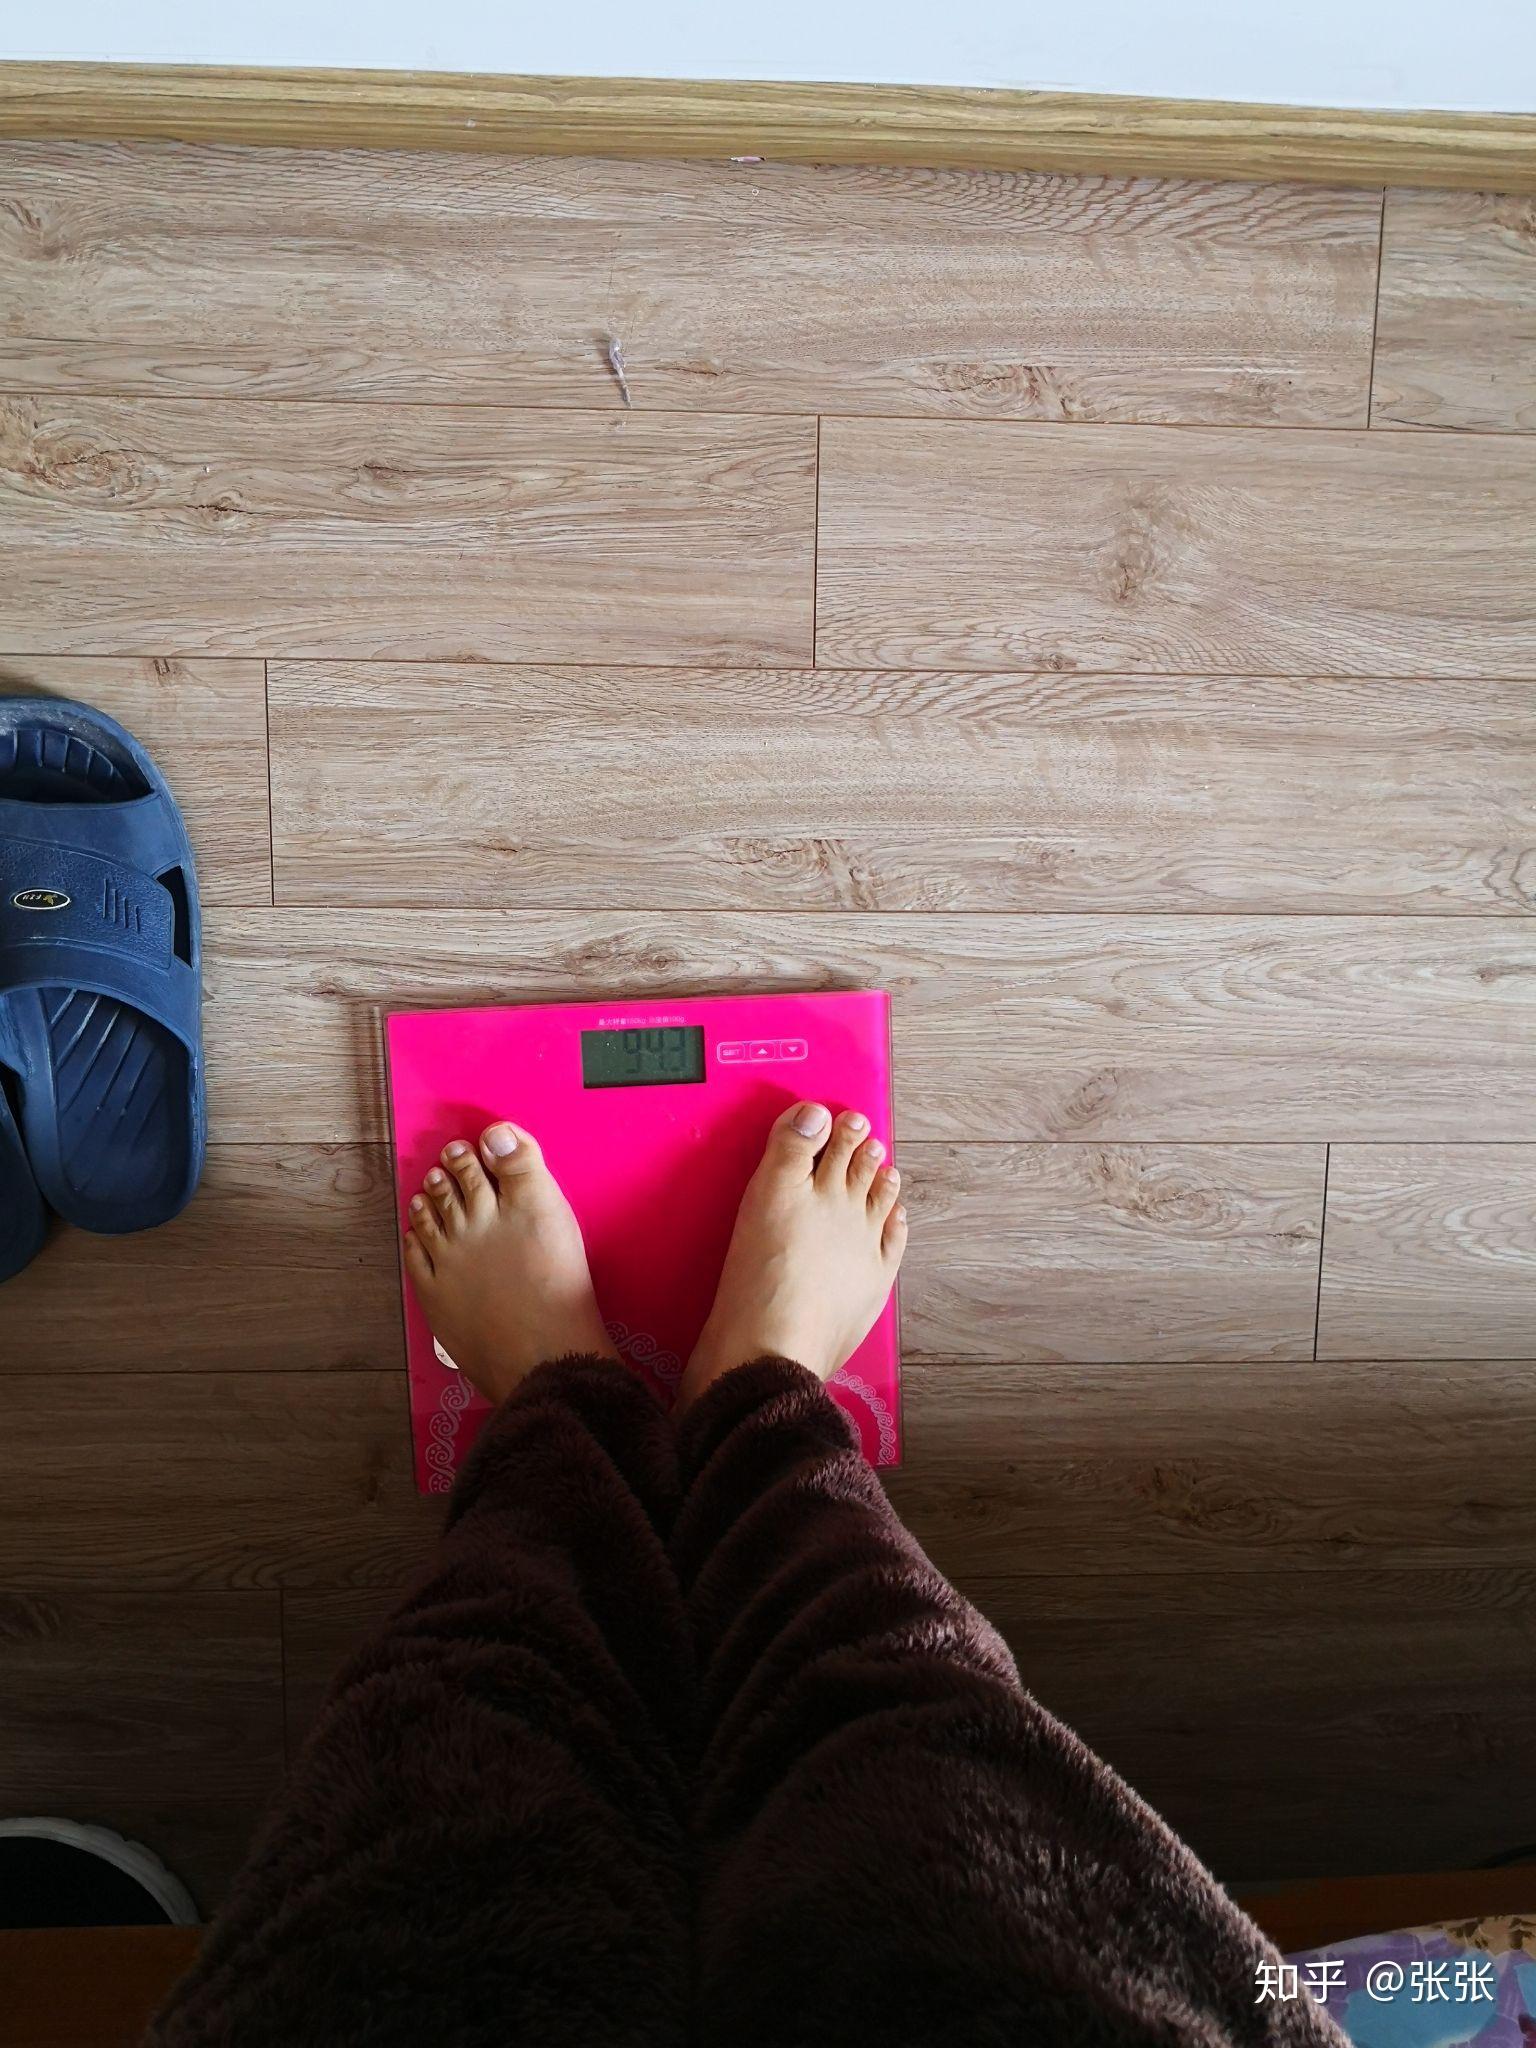 230斤的人如何顺利减肥到150斤? 